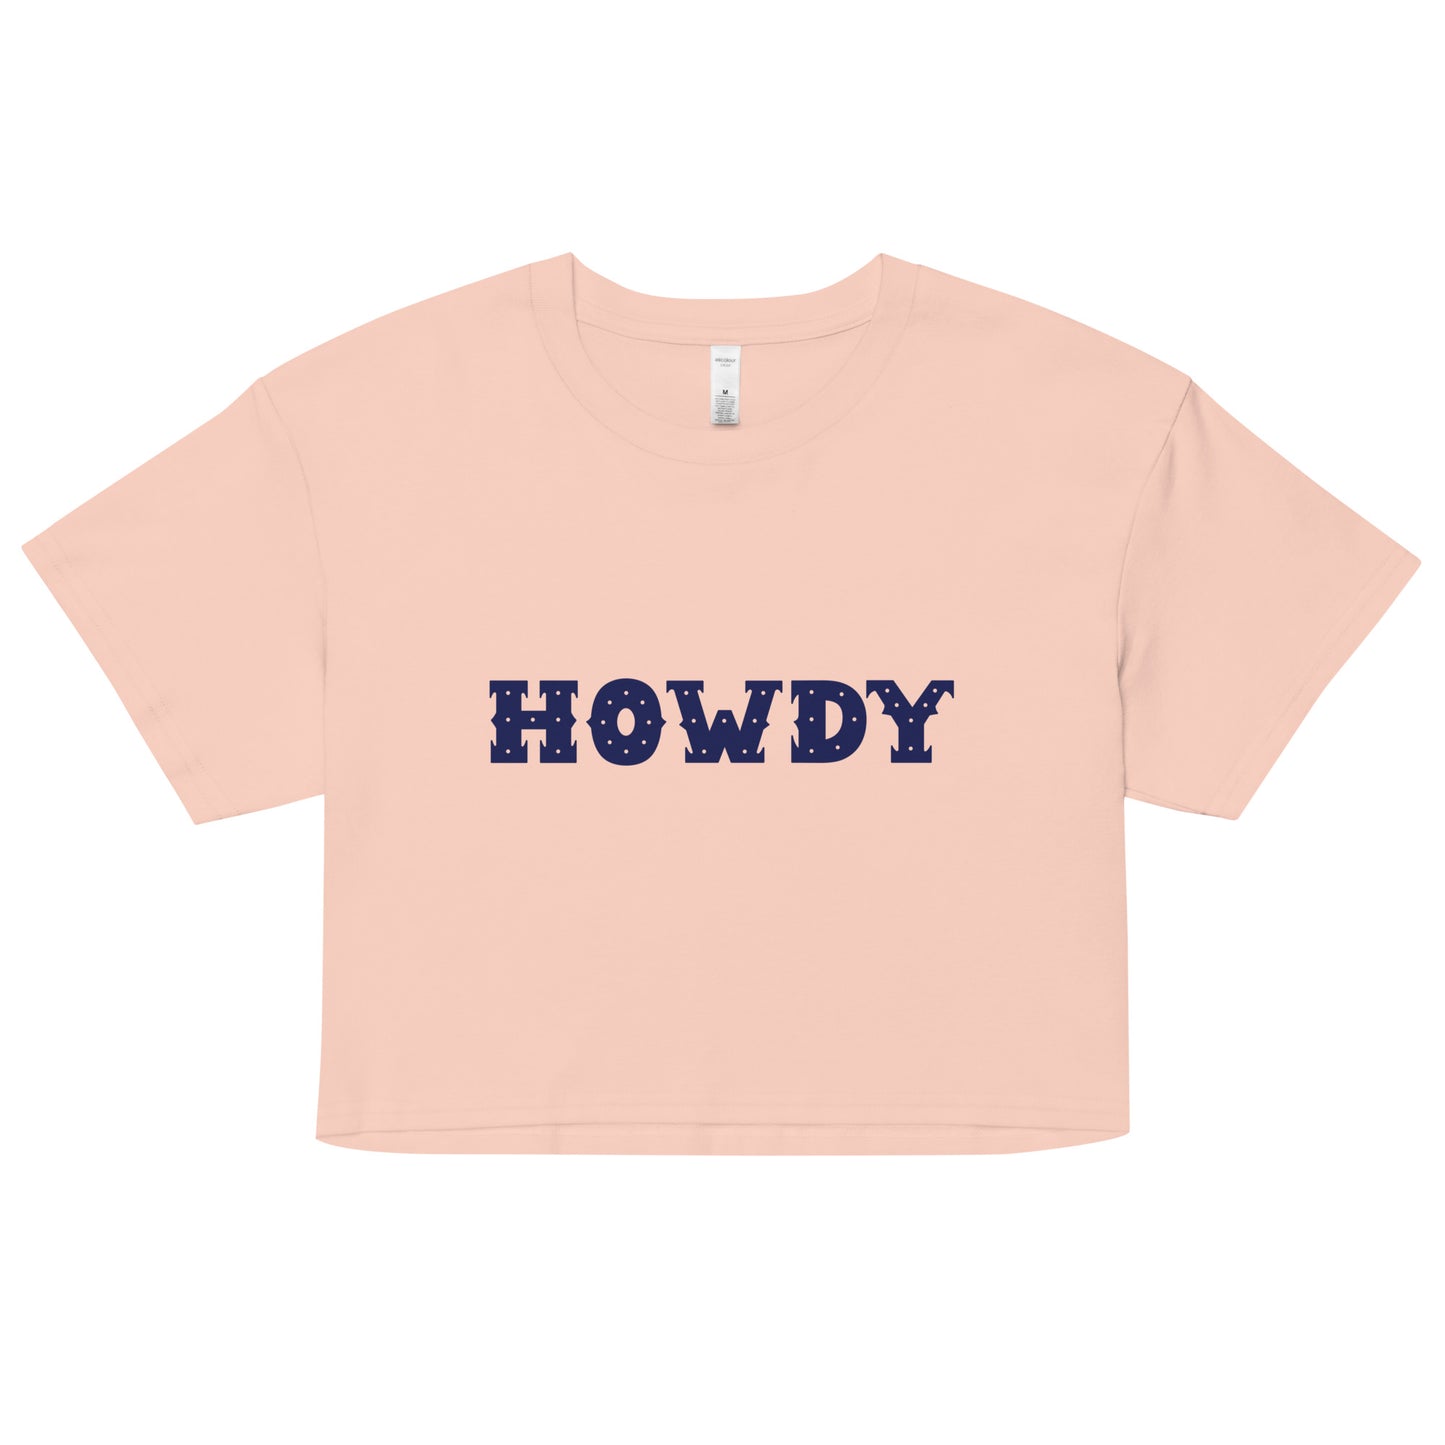 Howdy Women’s Crop Top